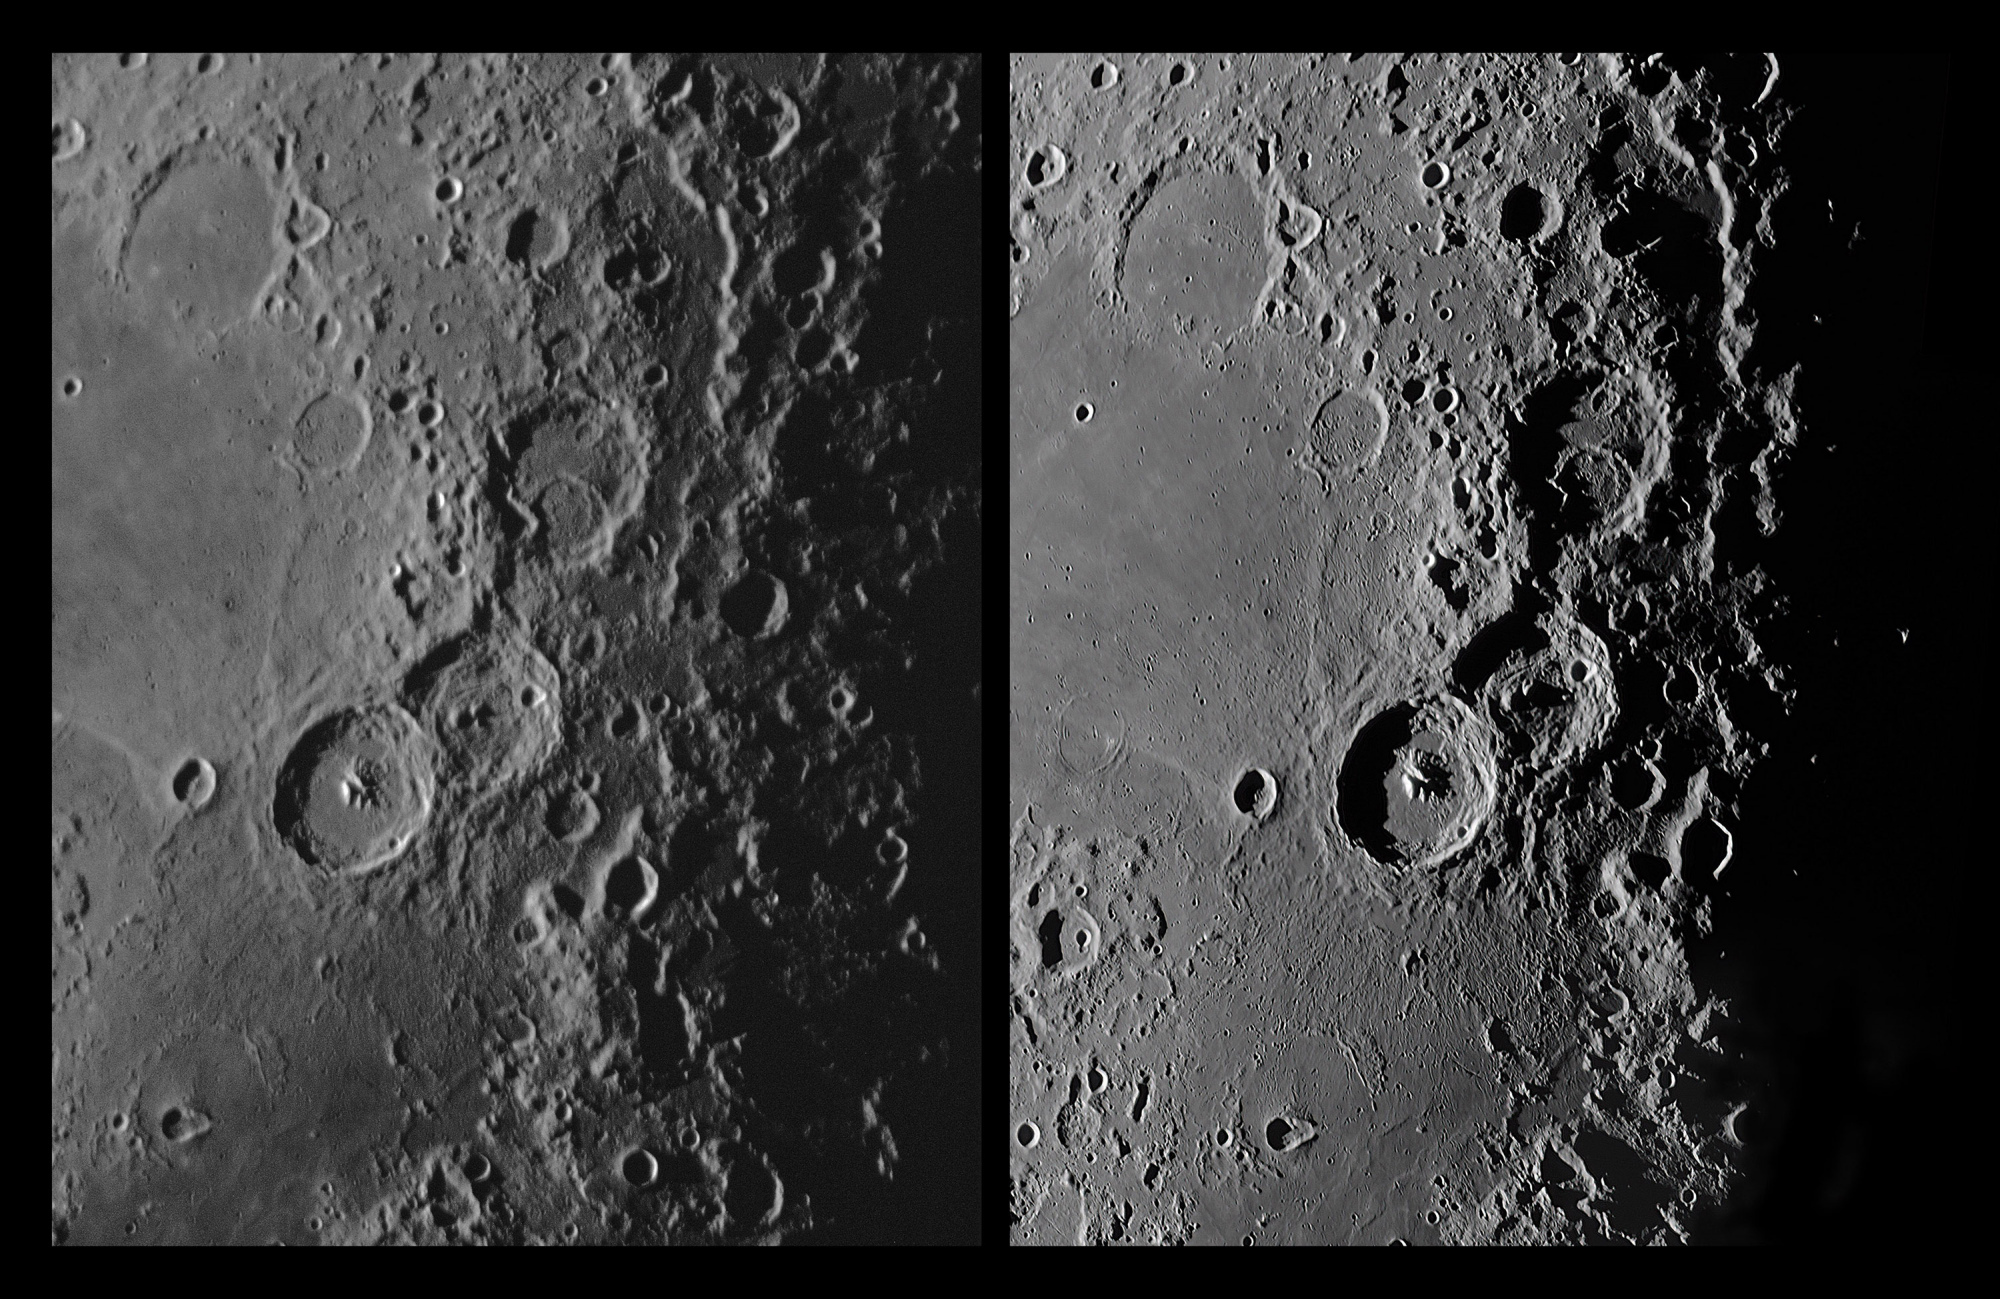 03 Lune Pic du Midi n&b Calern.jpg